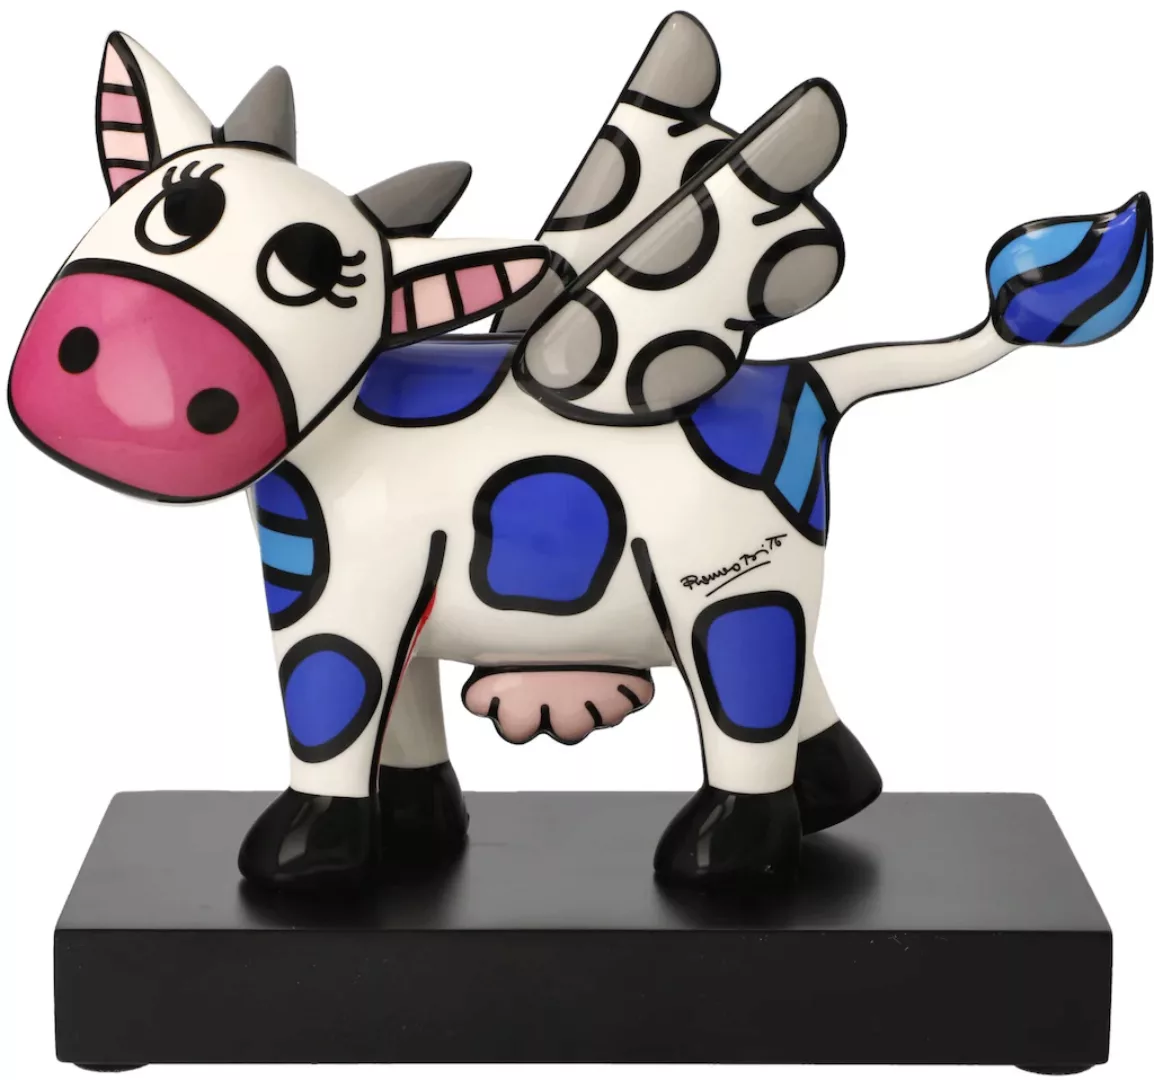 Goebel Sammelfigur "Britto", Pop Art, Porzellan, Romero Britto - Flying Cow günstig online kaufen